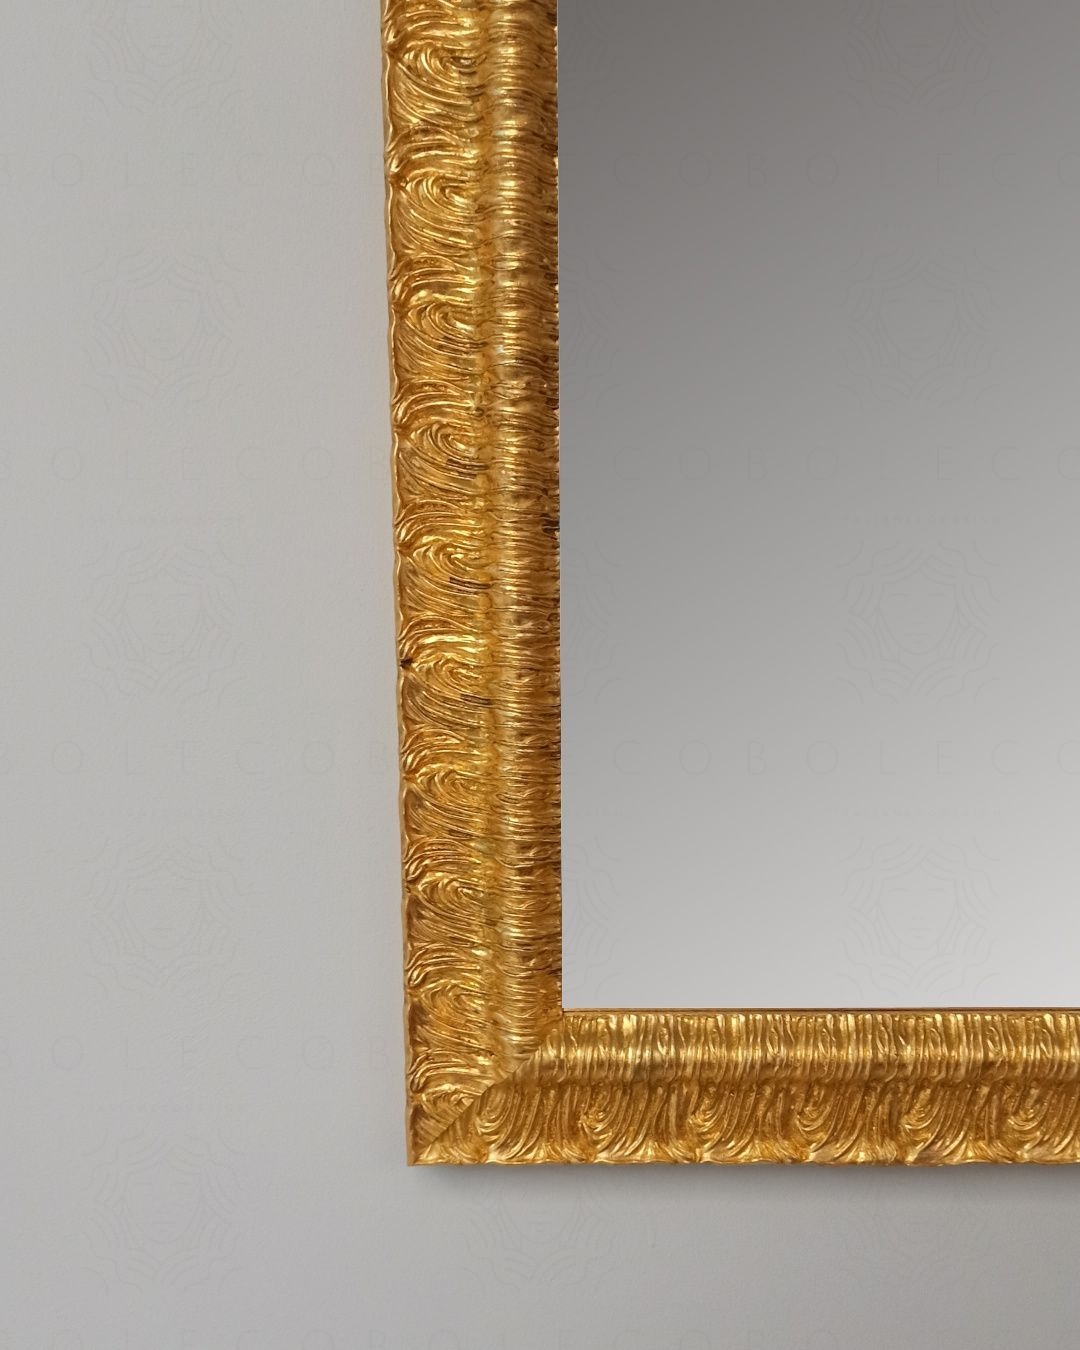 Specchio quadrato con cornice, cm.80x80